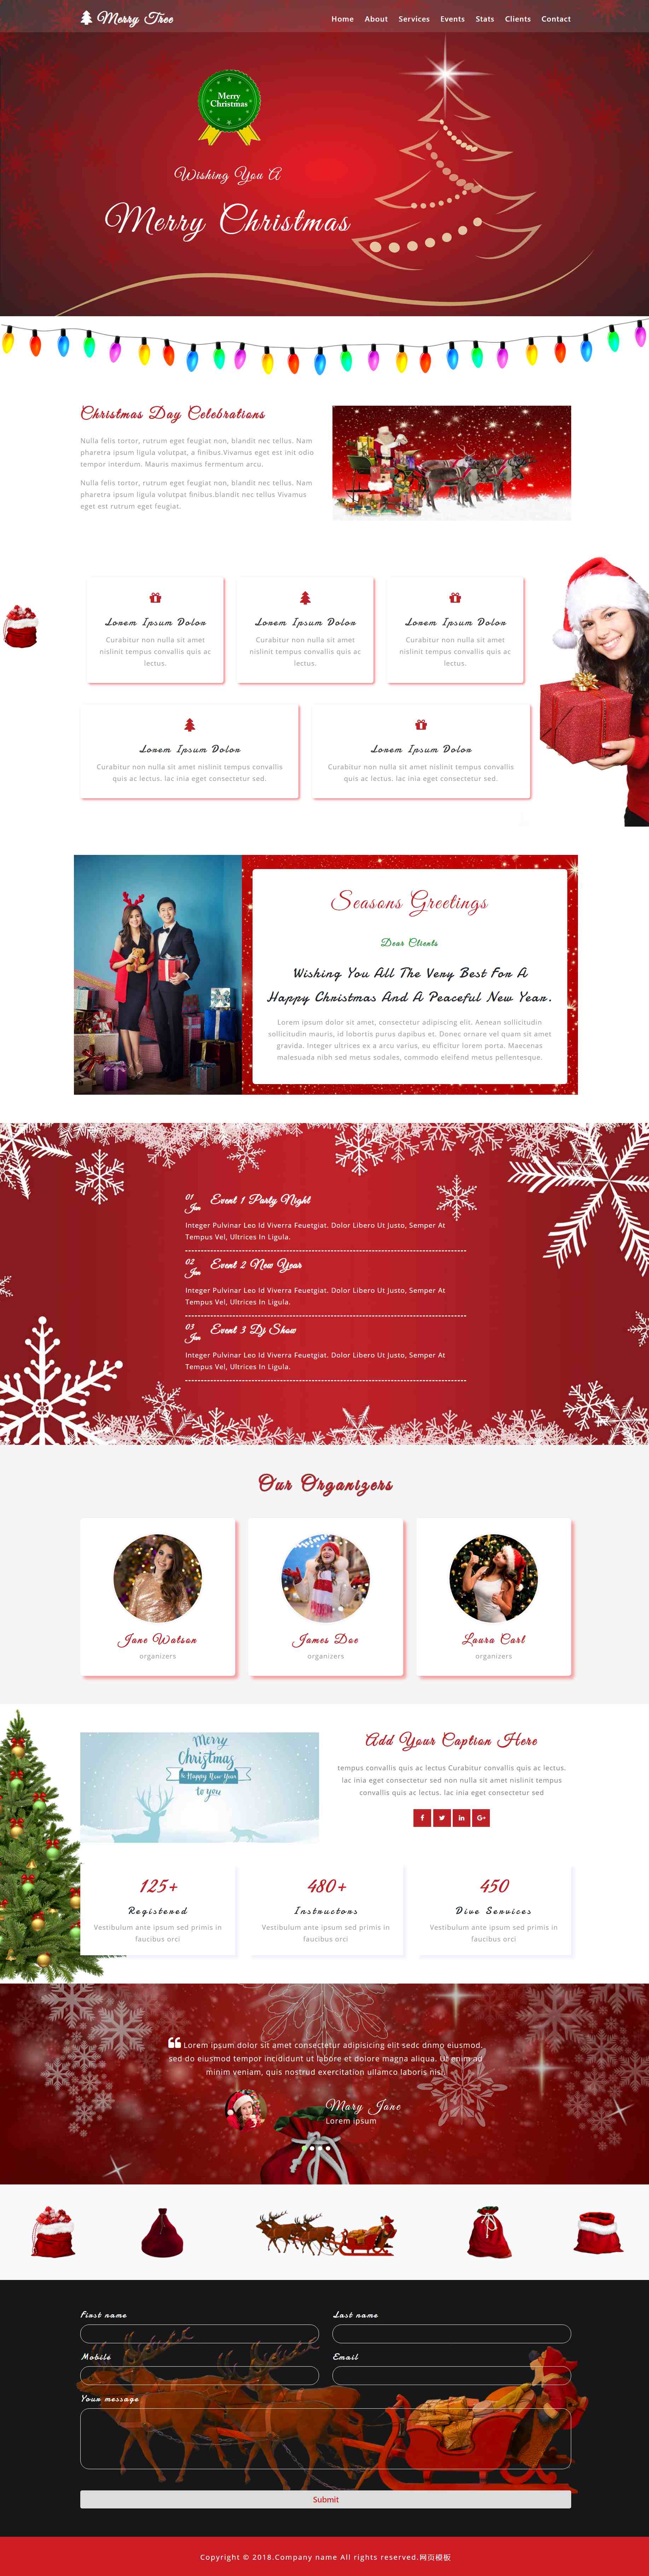 html红色简洁形式圣诞节活动页网页模板代码下载